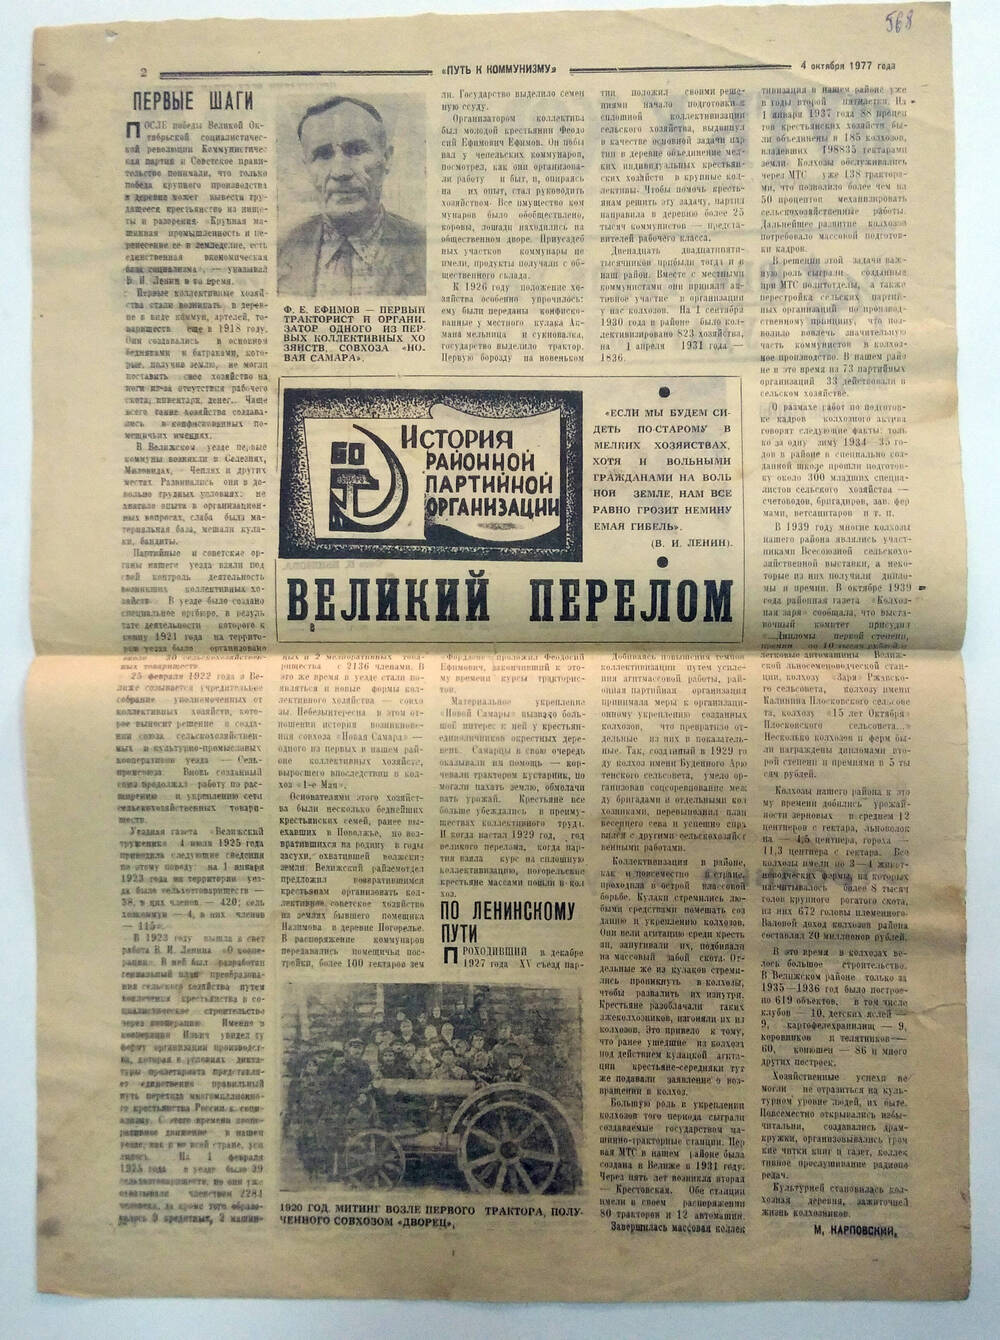 Статья в газете М. Карповский «Великий перелом». История районной партийной организации